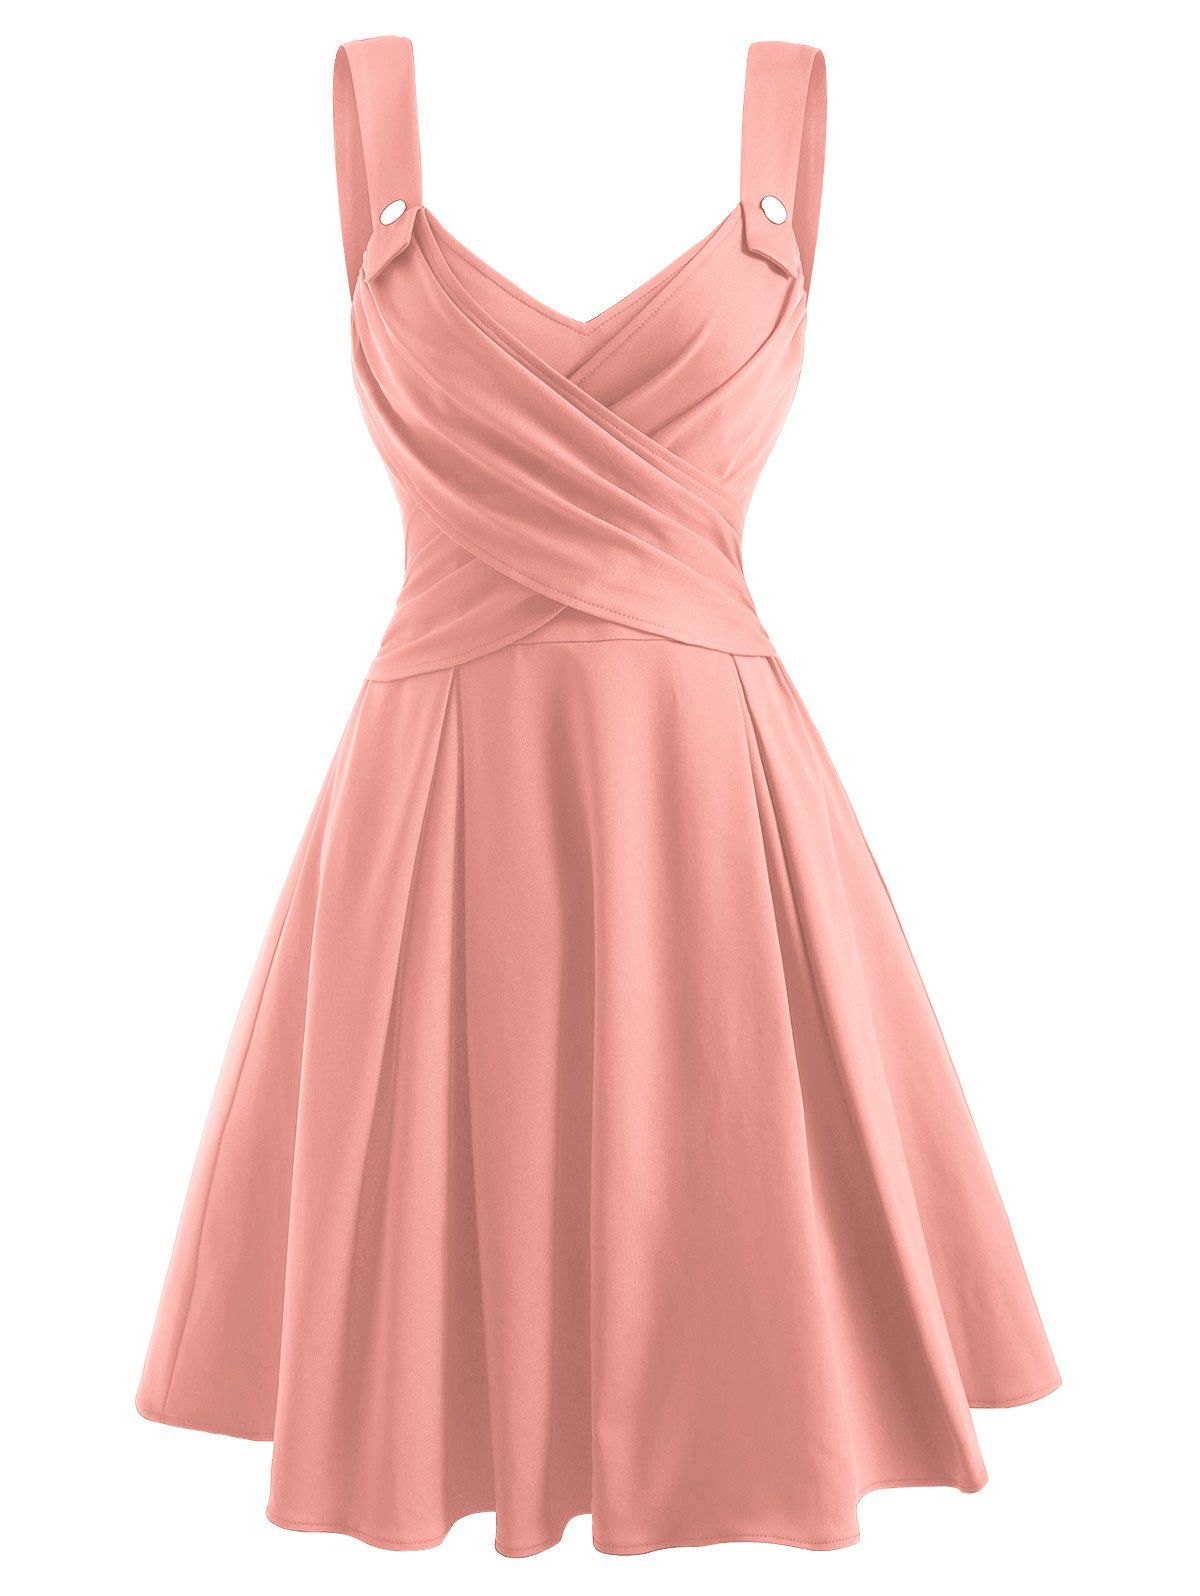 Criss Cross Mock Button Sweetheart Dress - LIGHT PINK XL